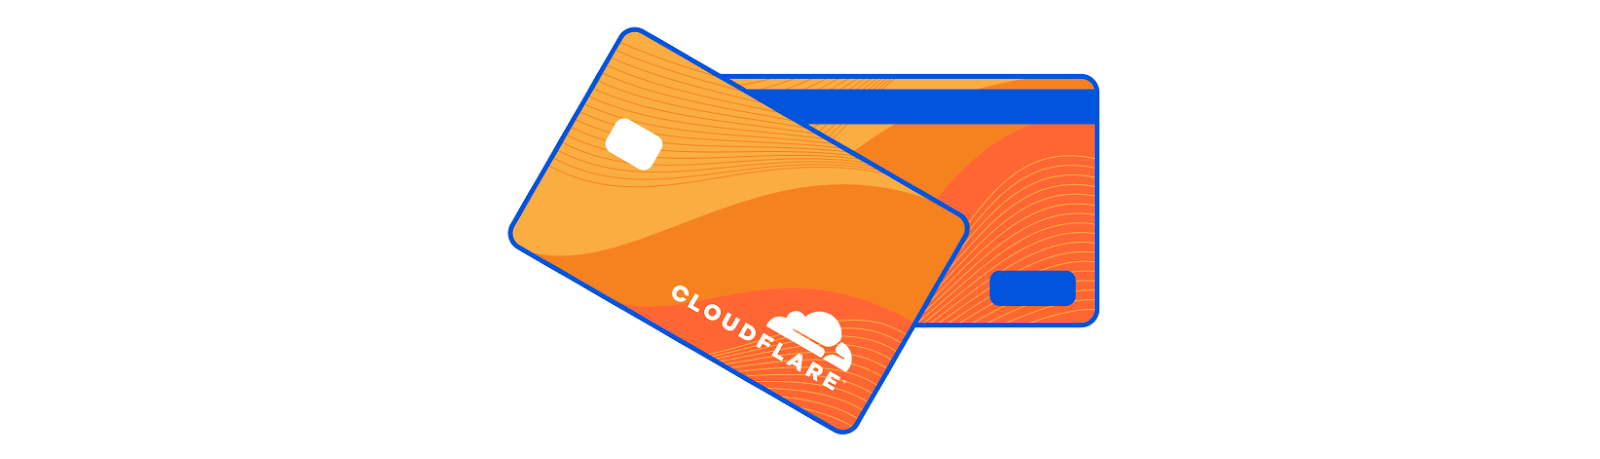 Будущее работы в Cloudflare